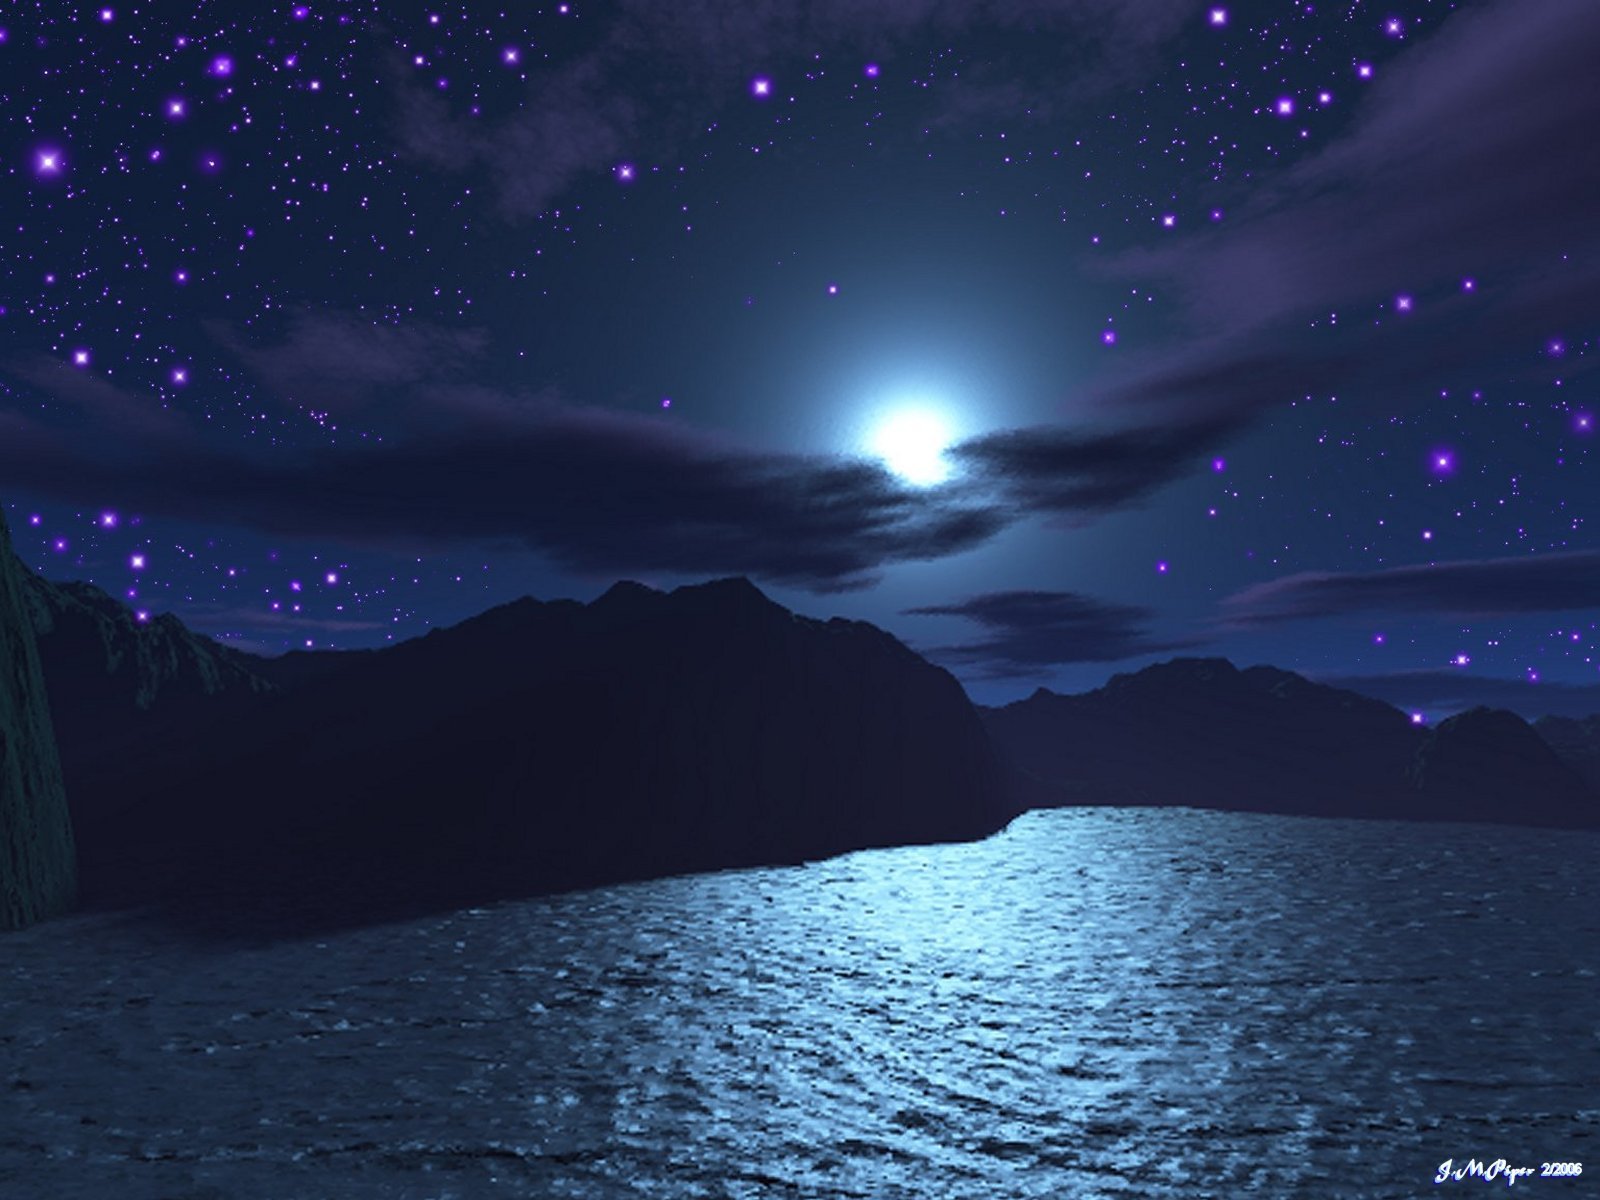 Наночь или на ночь. Море ночь звезды. Ночное море. Красивая ночь. Ночное небо со звездами.